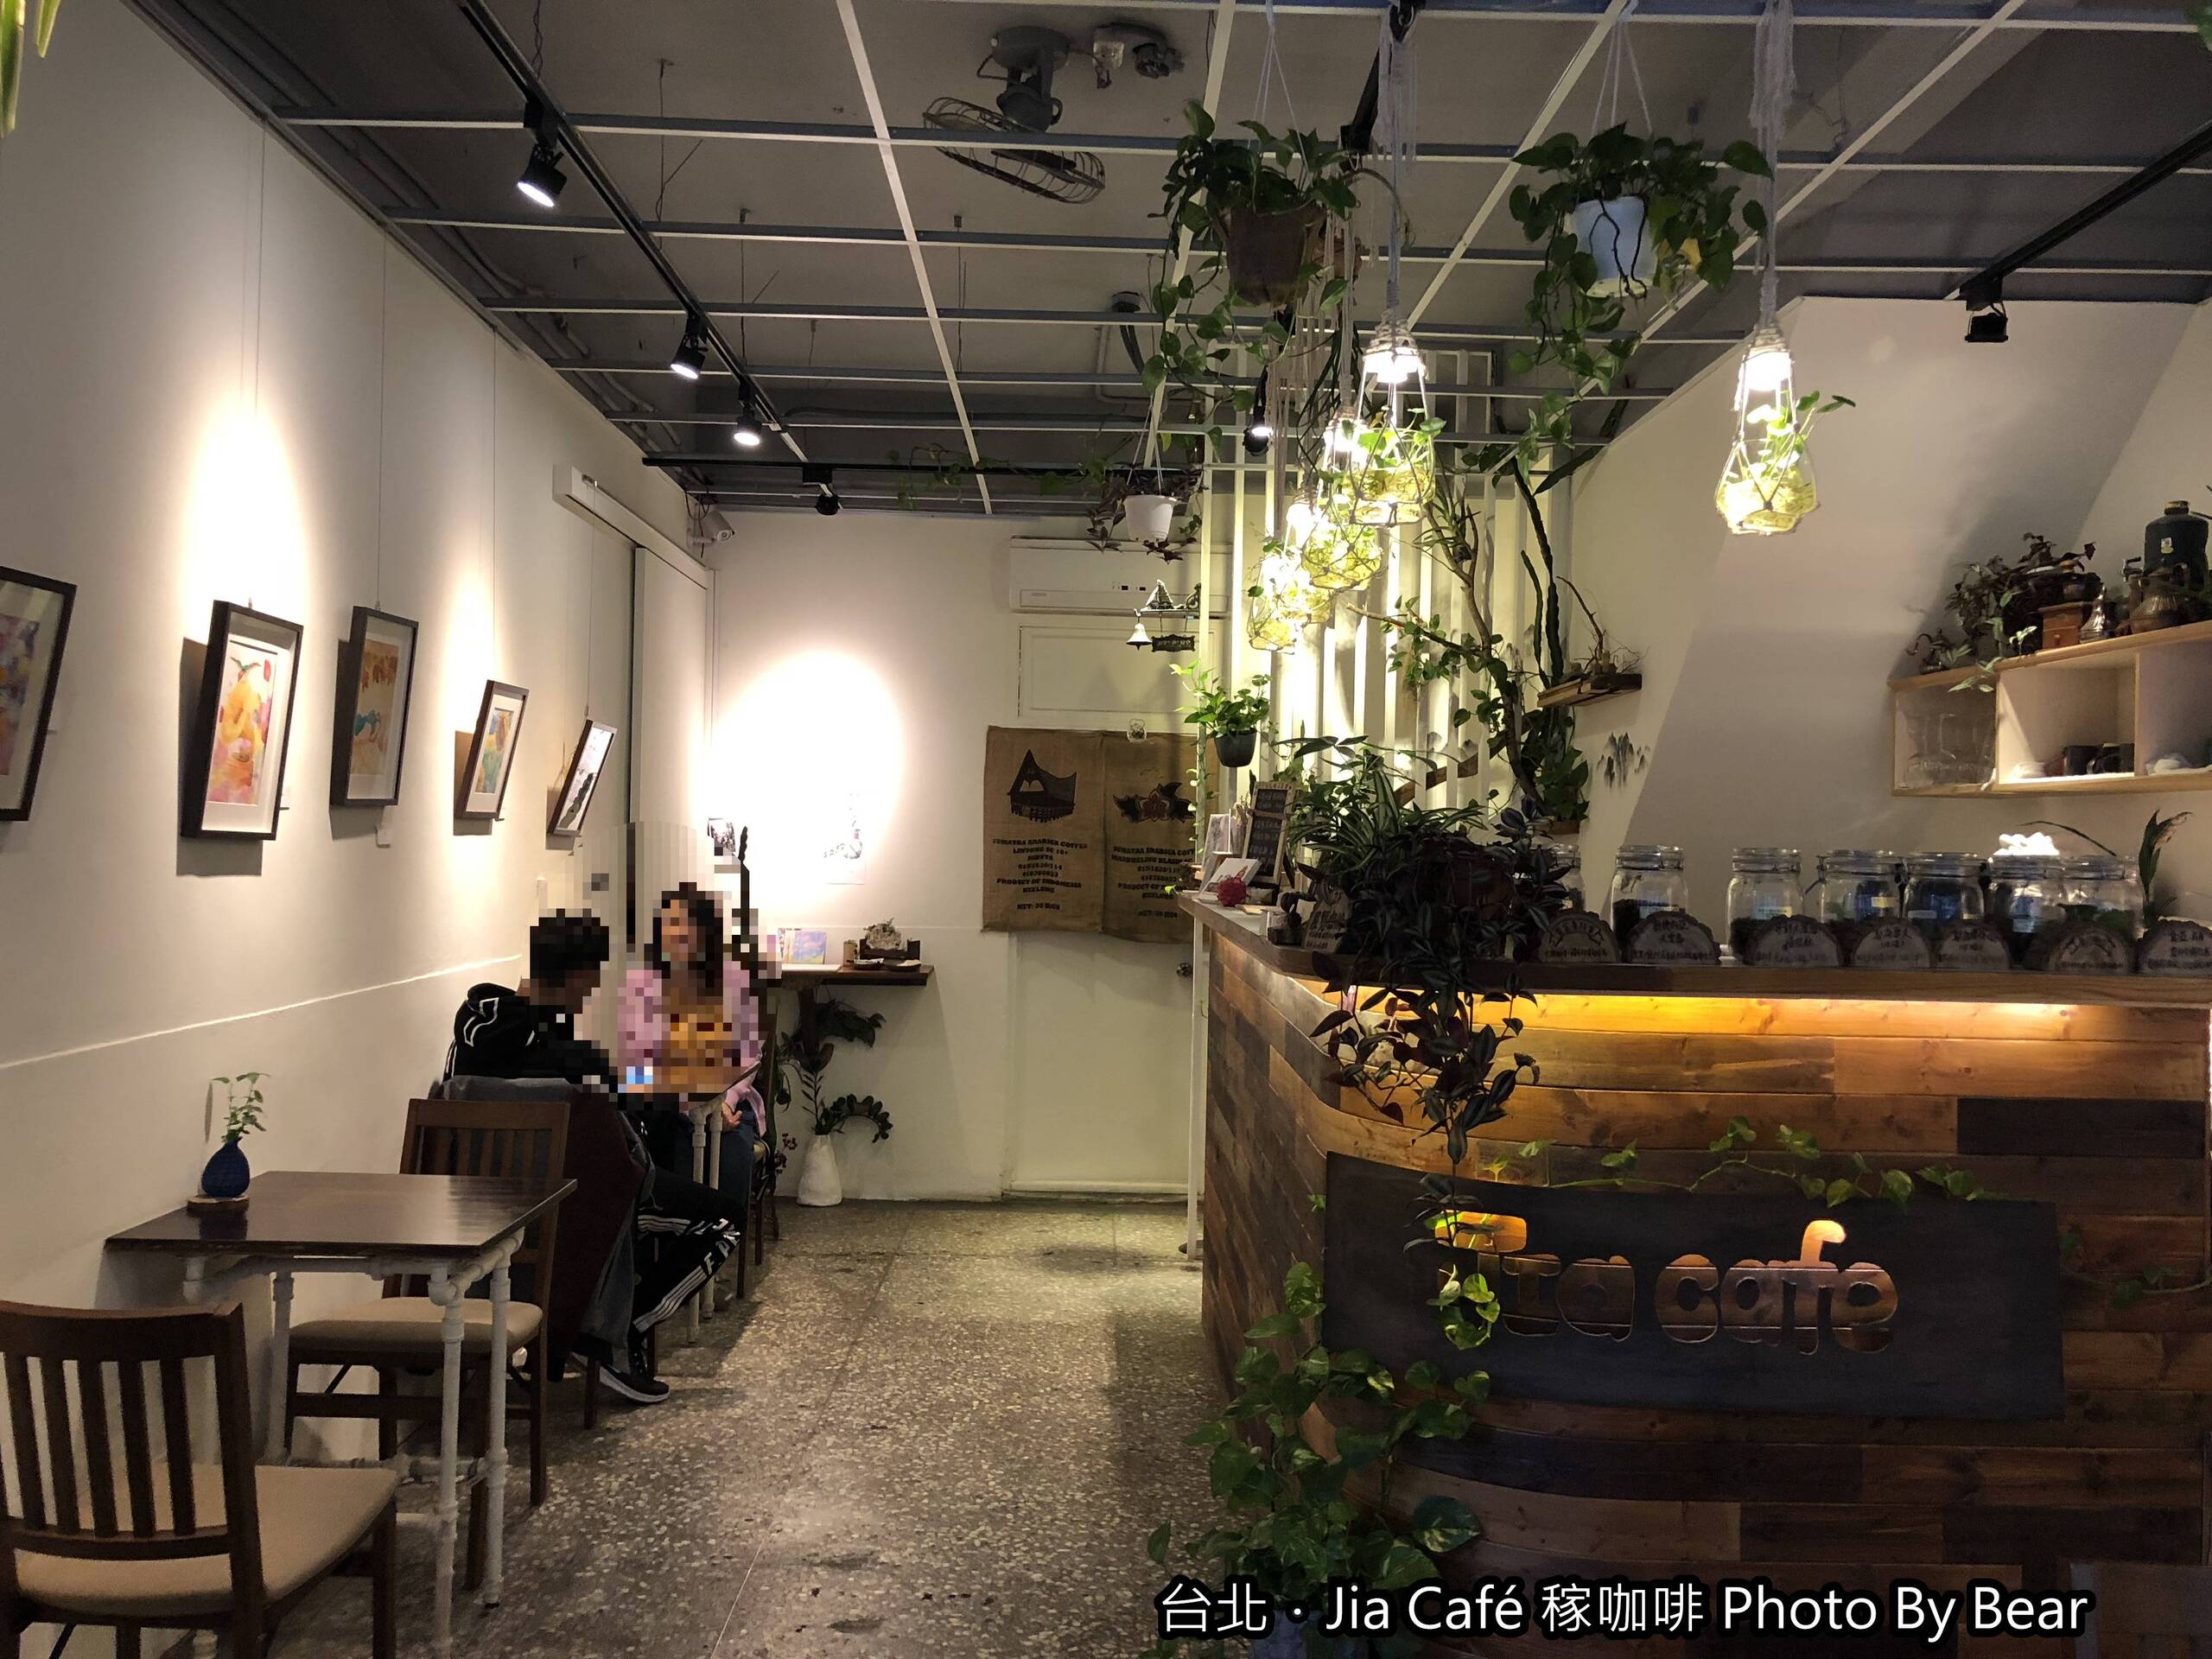 【板橋】「藝文與綠意的結合．Jia Cafe稼咖啡(老宅/木造空間/藝文展覽/植栽/手沖咖啡/雪藏蛋糕/近板橋體育場)」